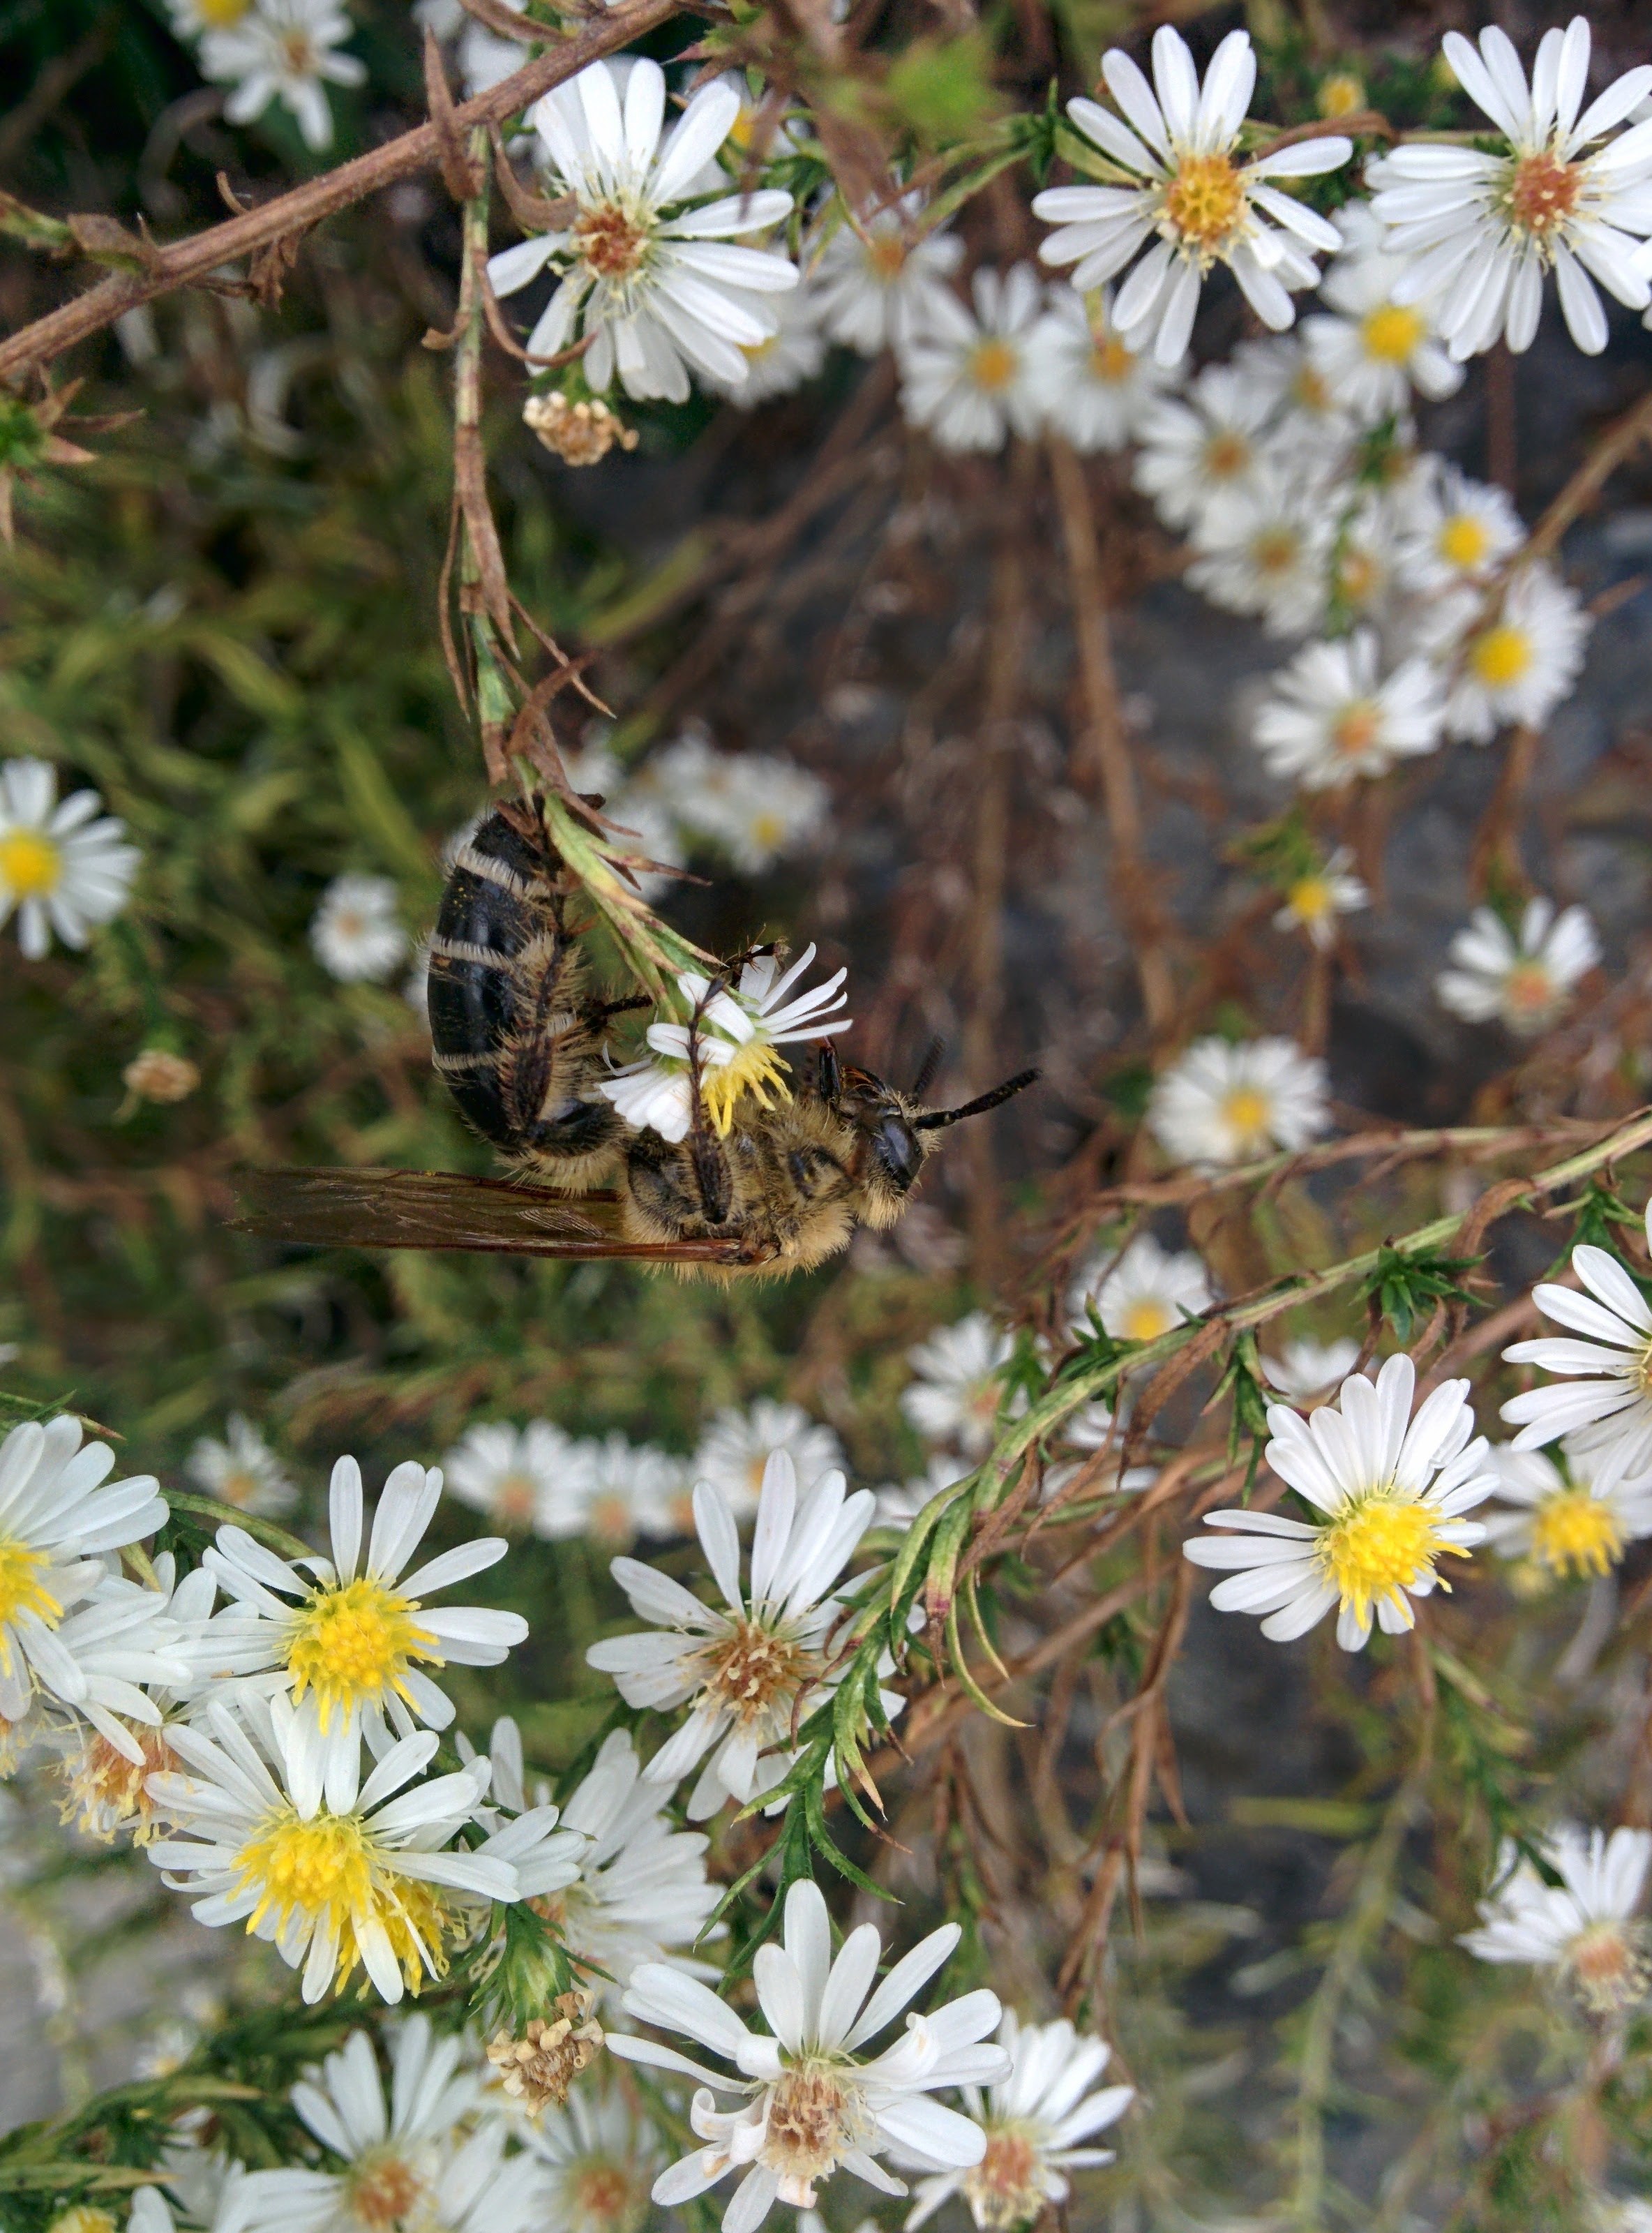 IMG_20151007_152441.jpg 미국쑥부쟁이 꽃숲을 기어서 날아서 구석구석 누비는 배벌